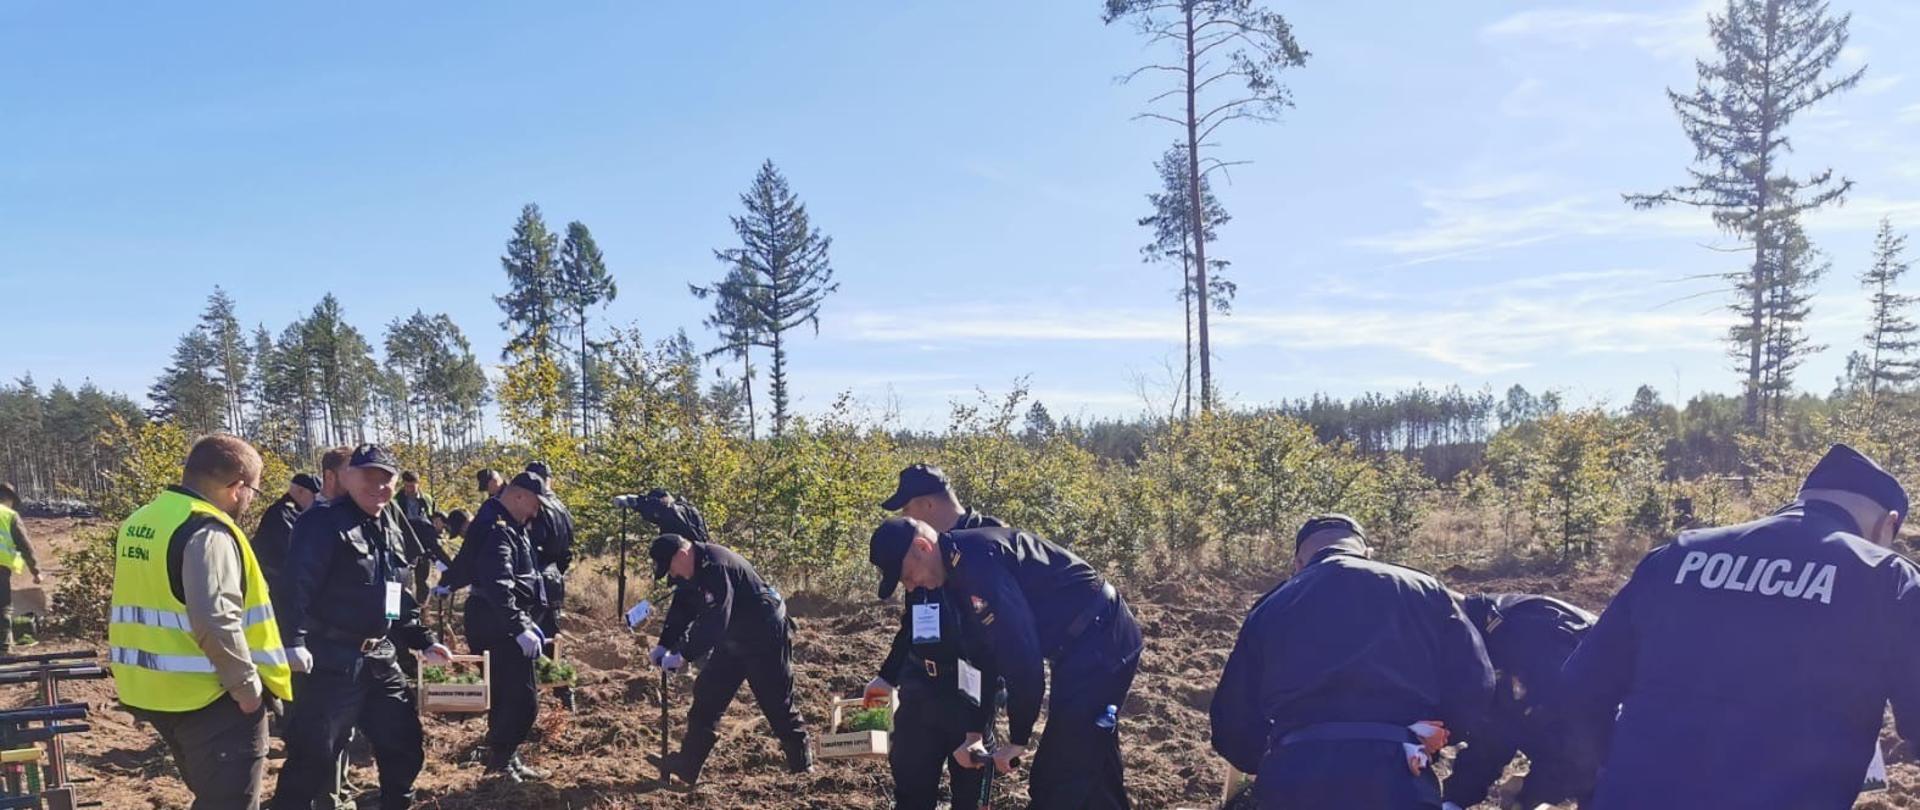 Zdjęcie przedstawia grupę Strażaków oraz Policjantów w mundurach podczas pracy odnowy lasu. W tle zniszczony las.